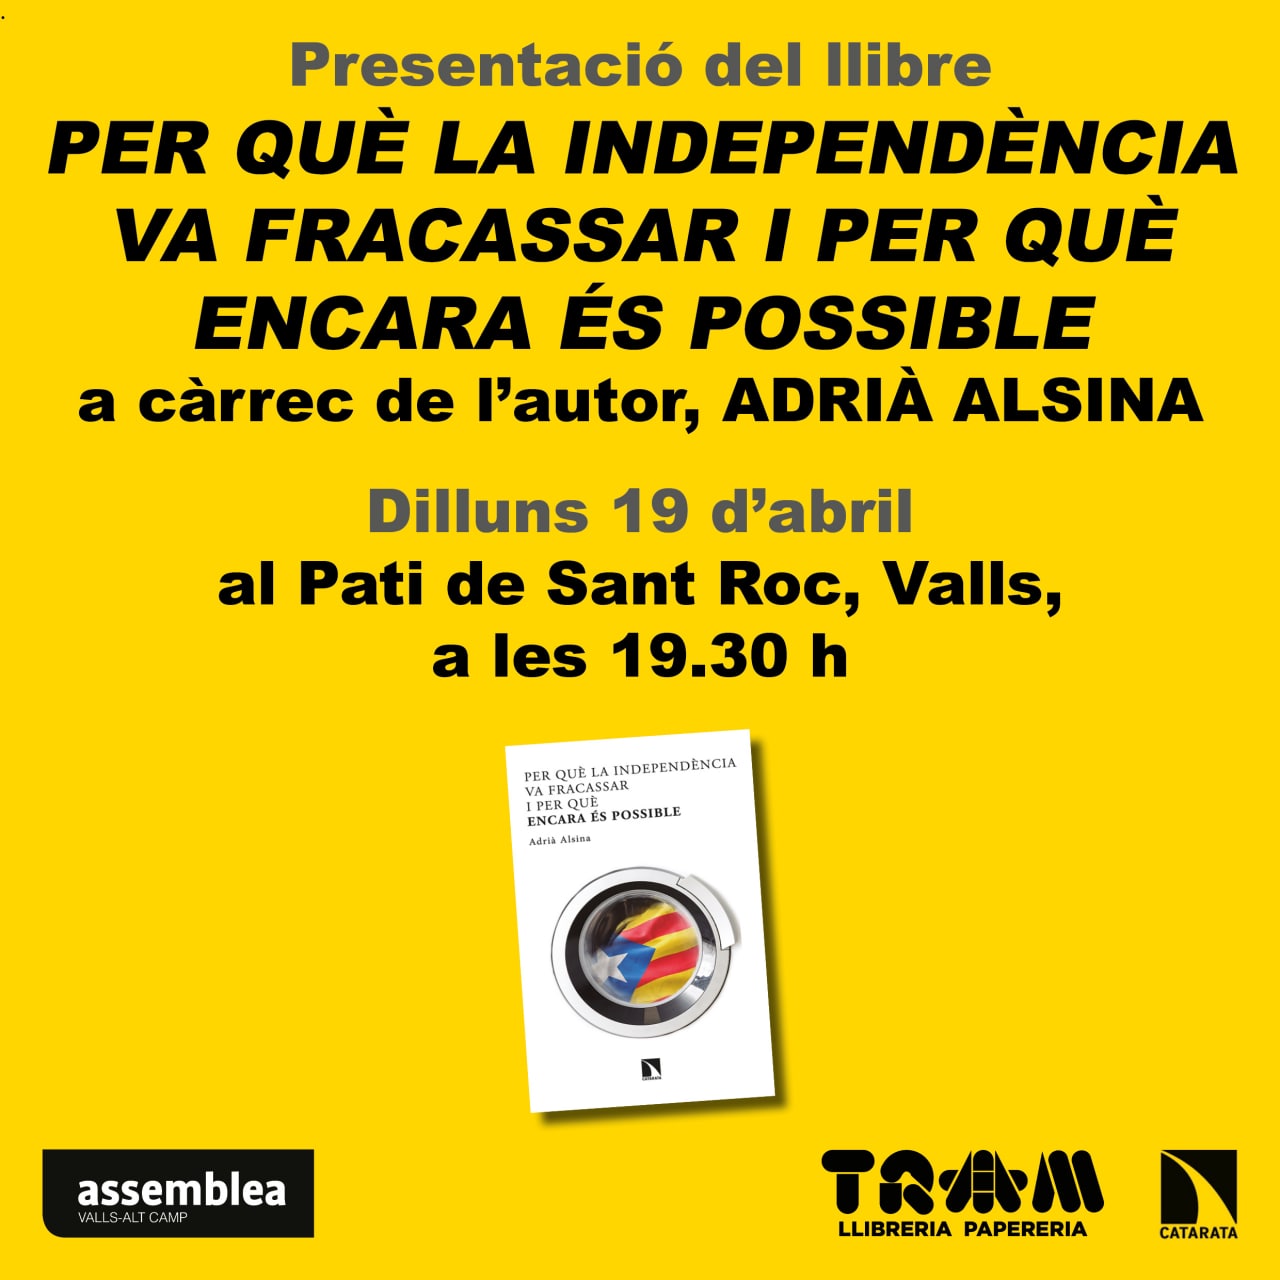 Presentació del llibre "Per què la Independència va fracassar i per què encara és possible?", d'Adrià Alsina